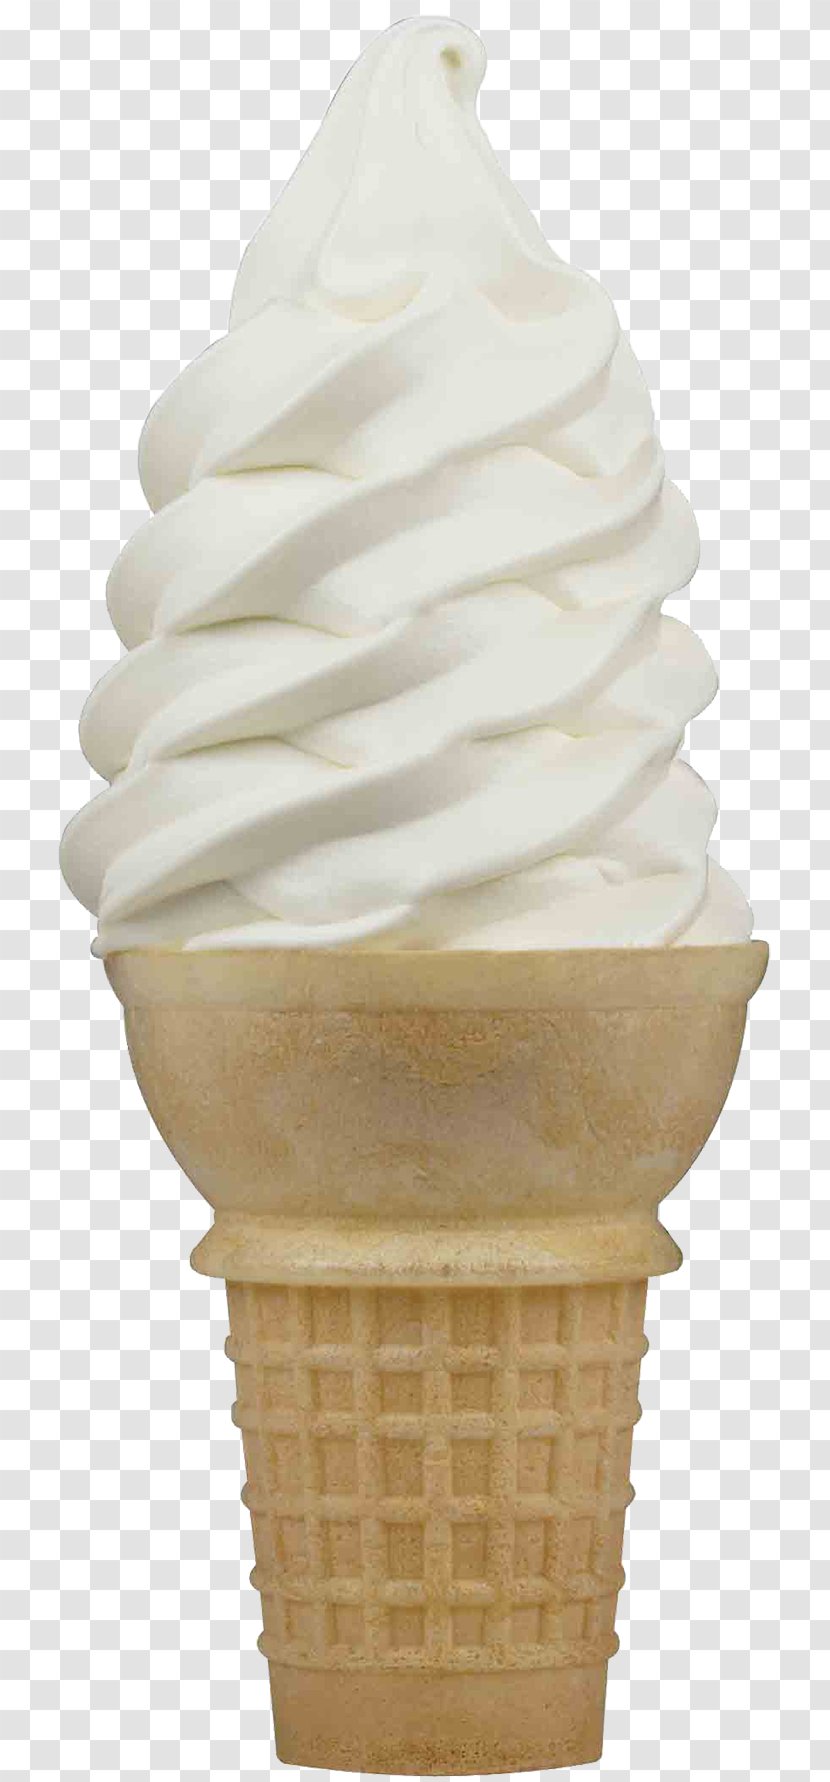 Ice Cream Cones Frozen Yogurt Sundae - Dessert Transparent PNG